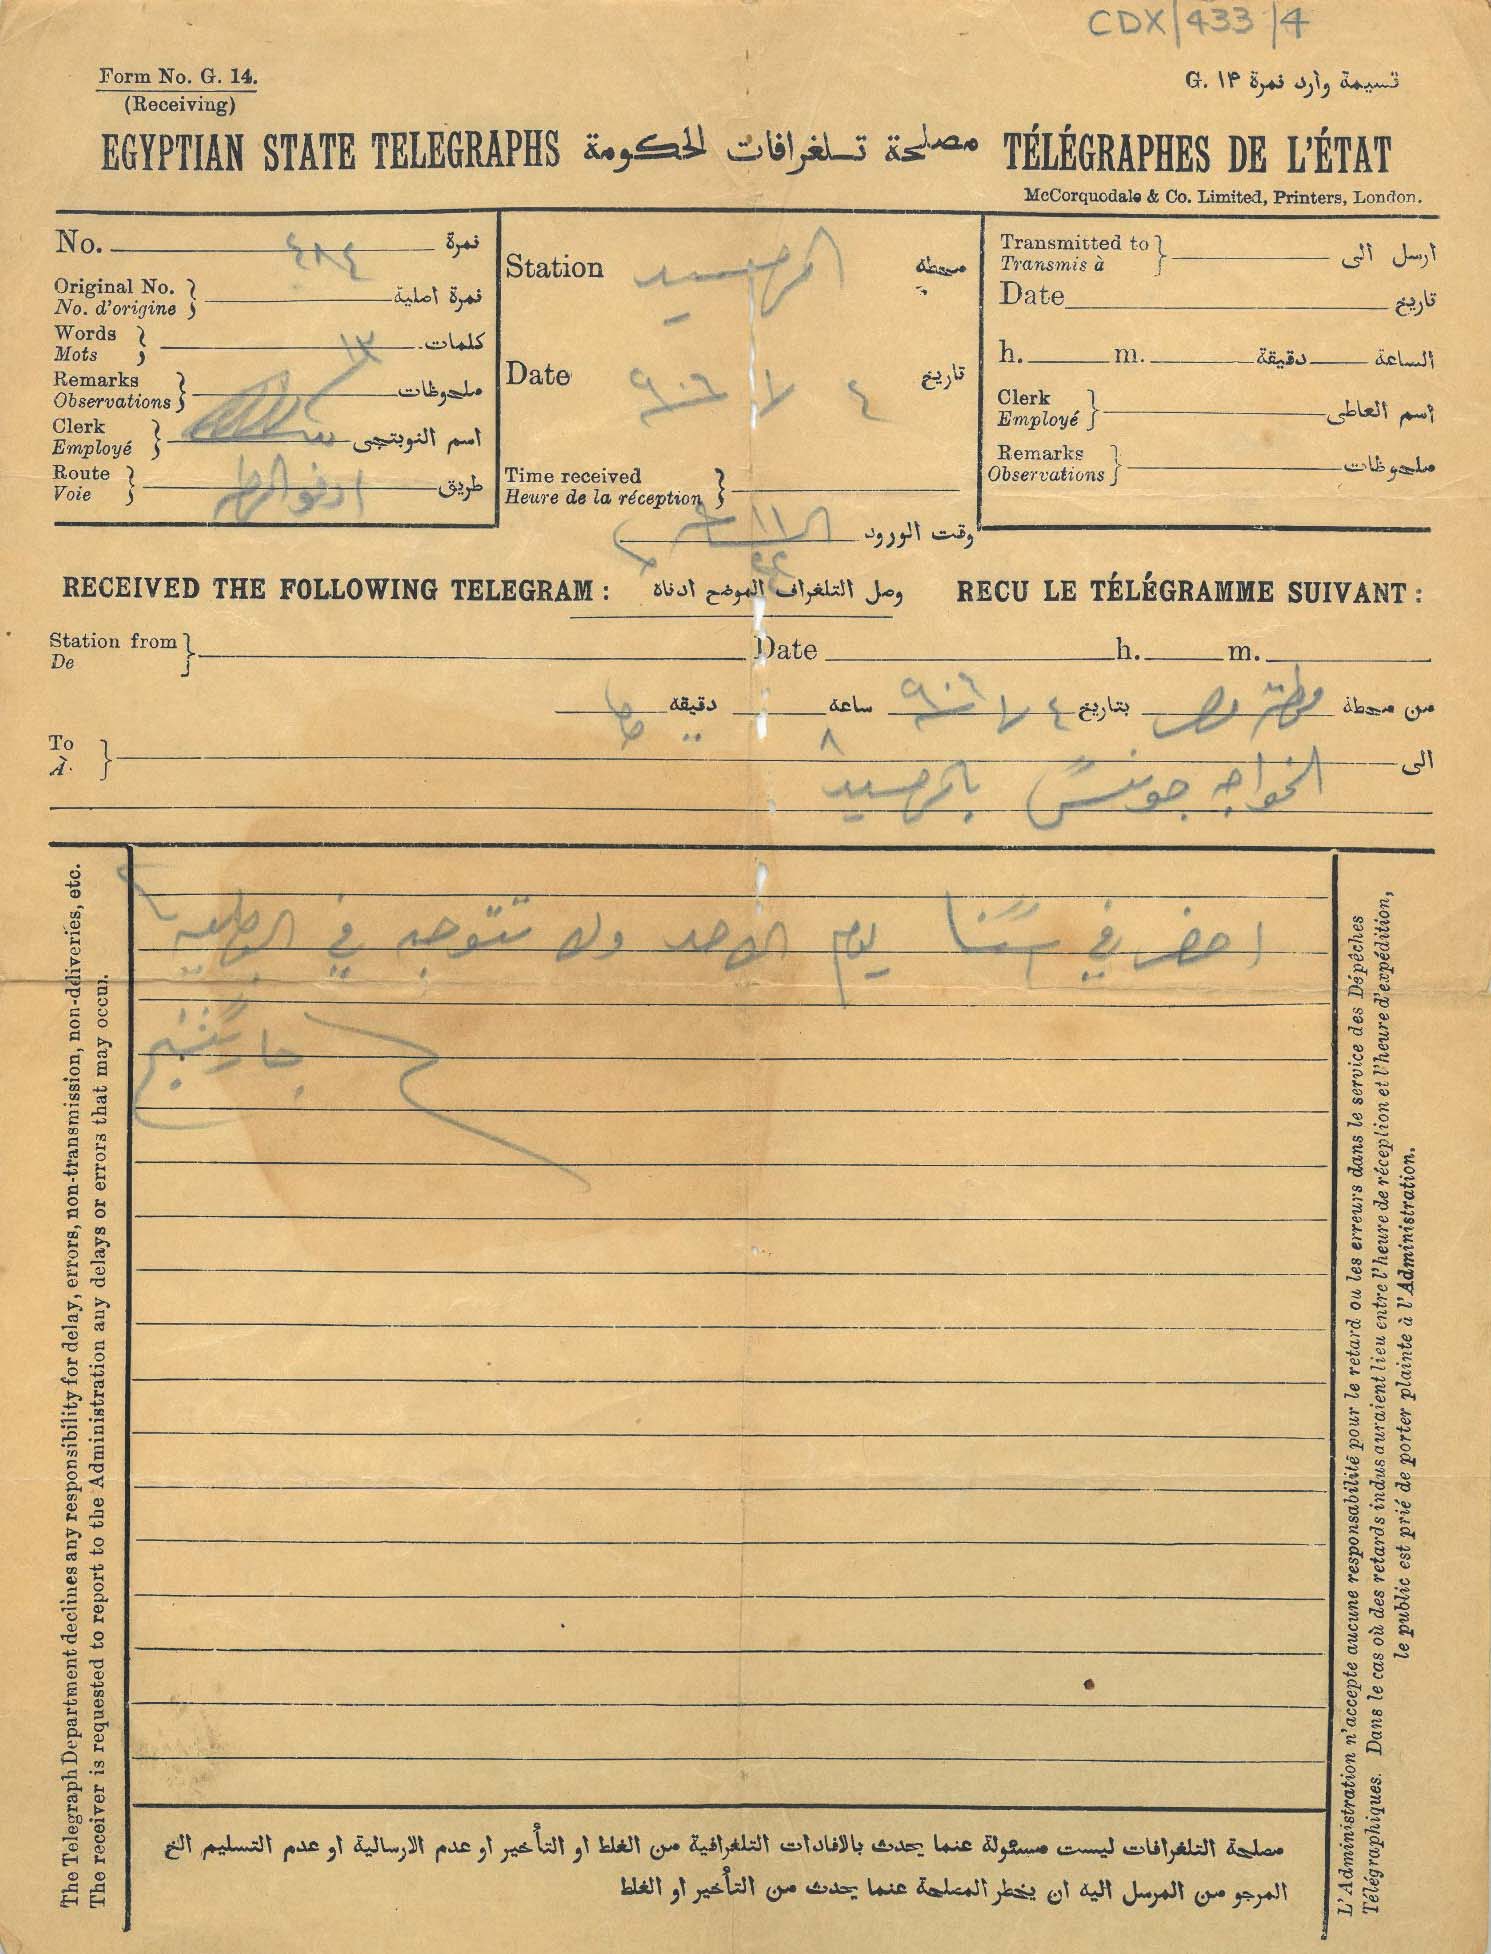 Image of the Egyptian telegram